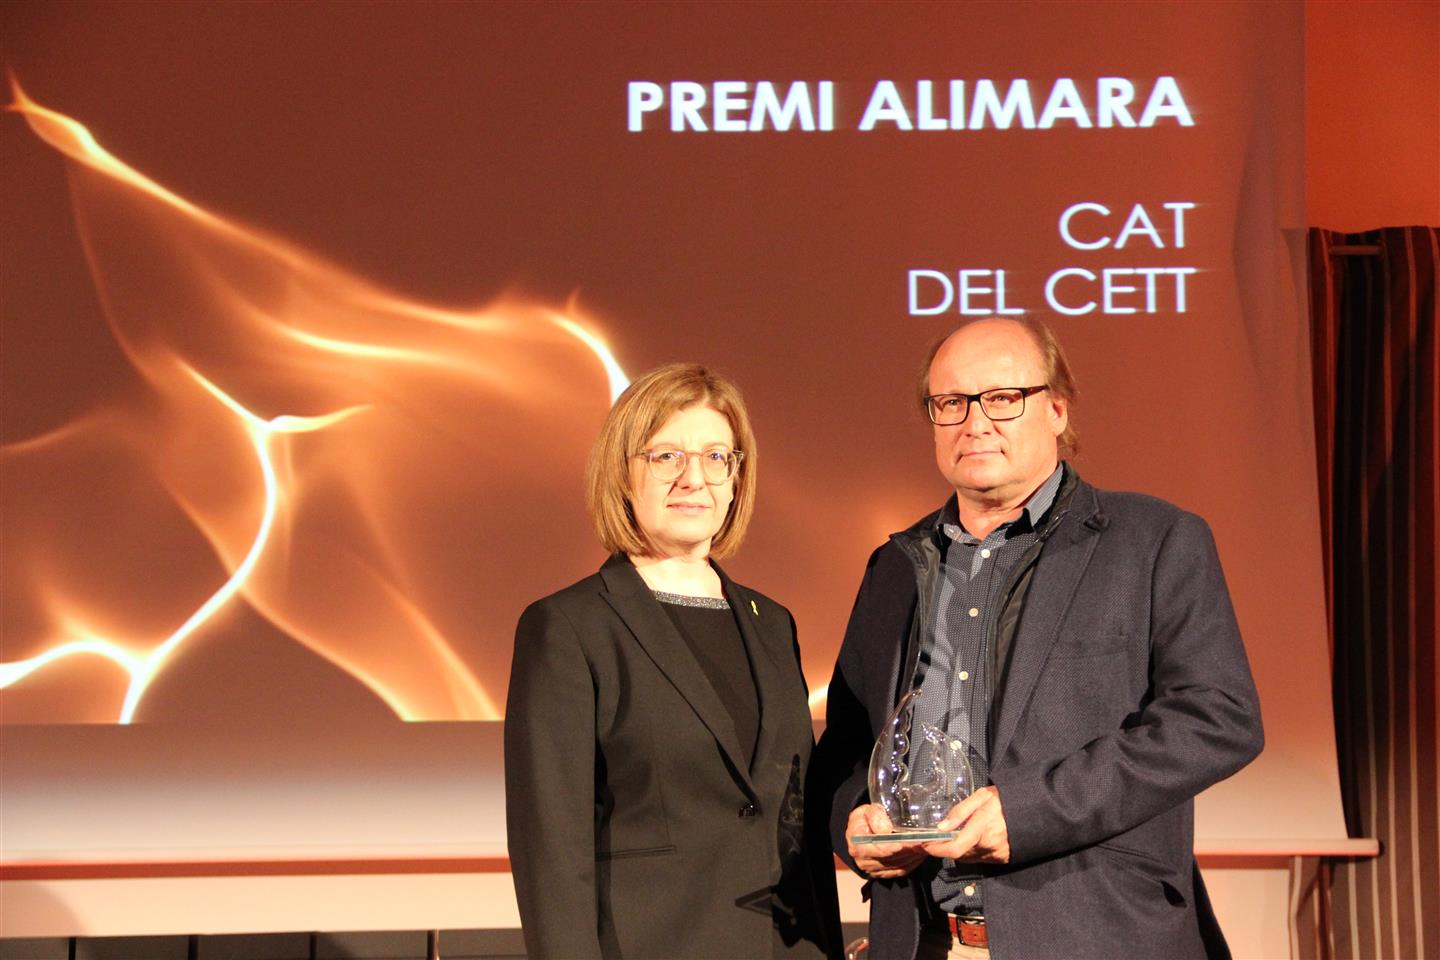 Fotografía de: Galería fotográfica | Premios CETT Alimara